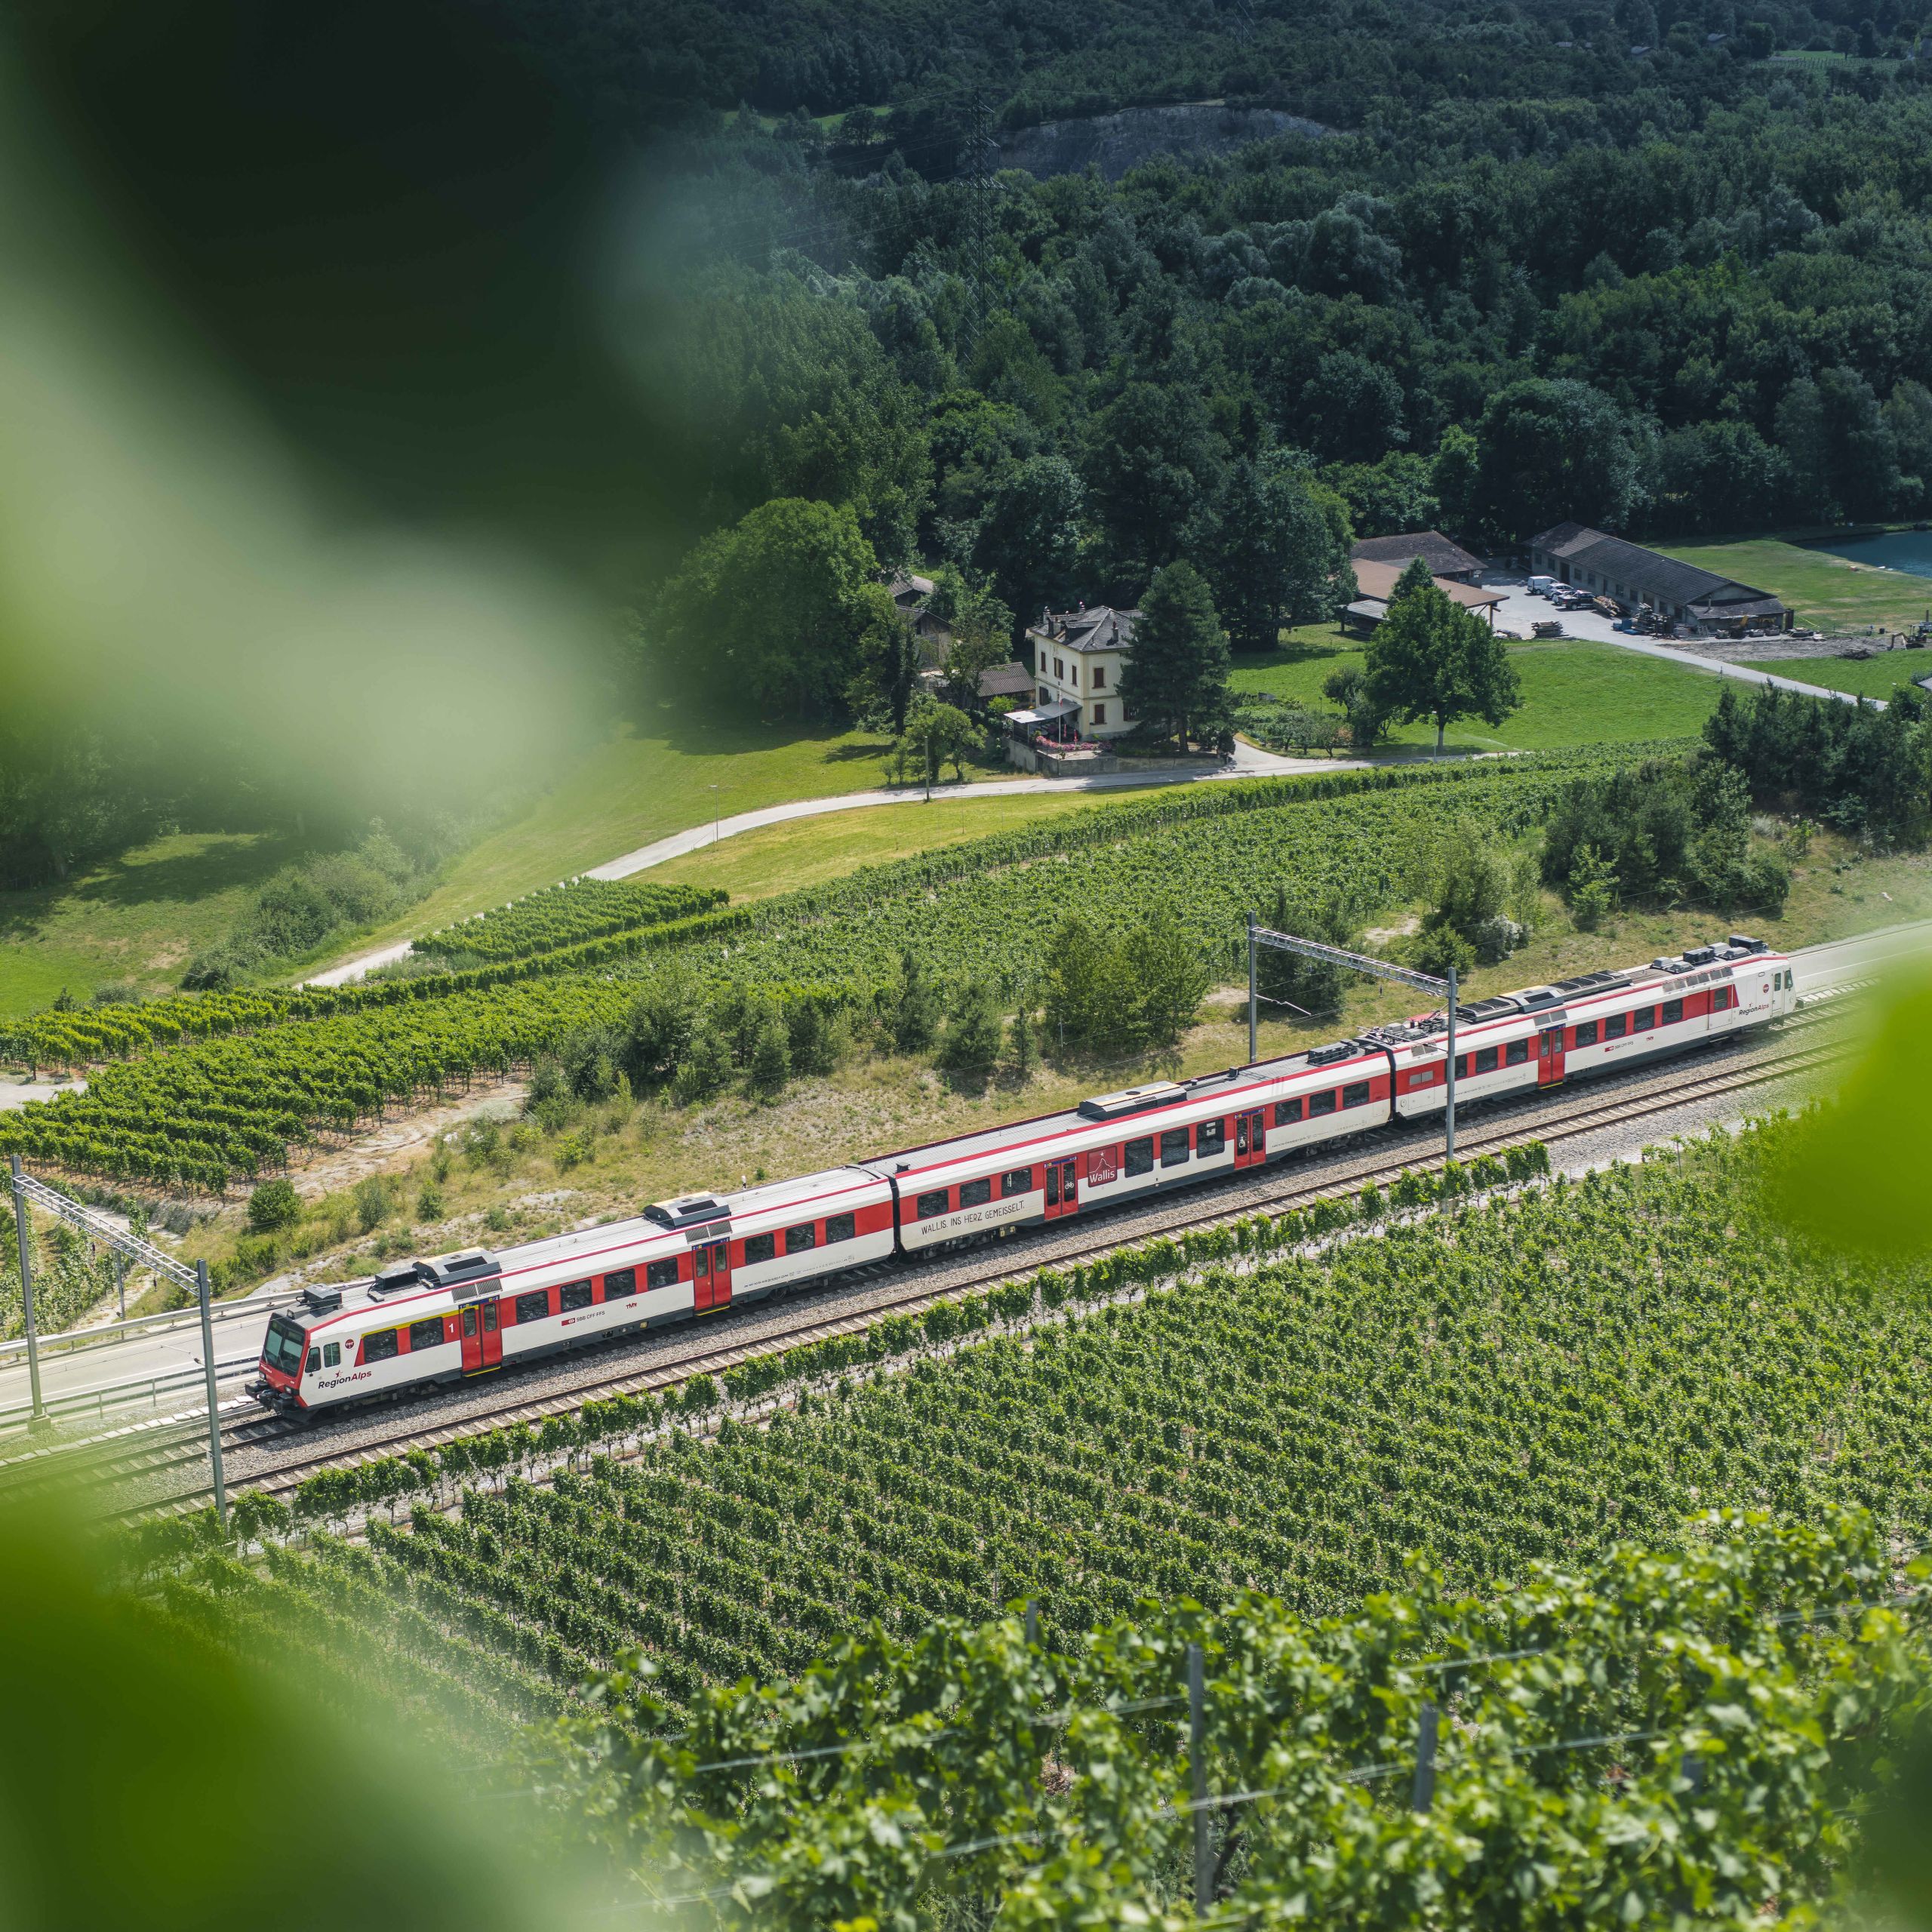 Train régional valaisan dans les vignes de Salgesch dans la région de Sierre, Valais, Suisse